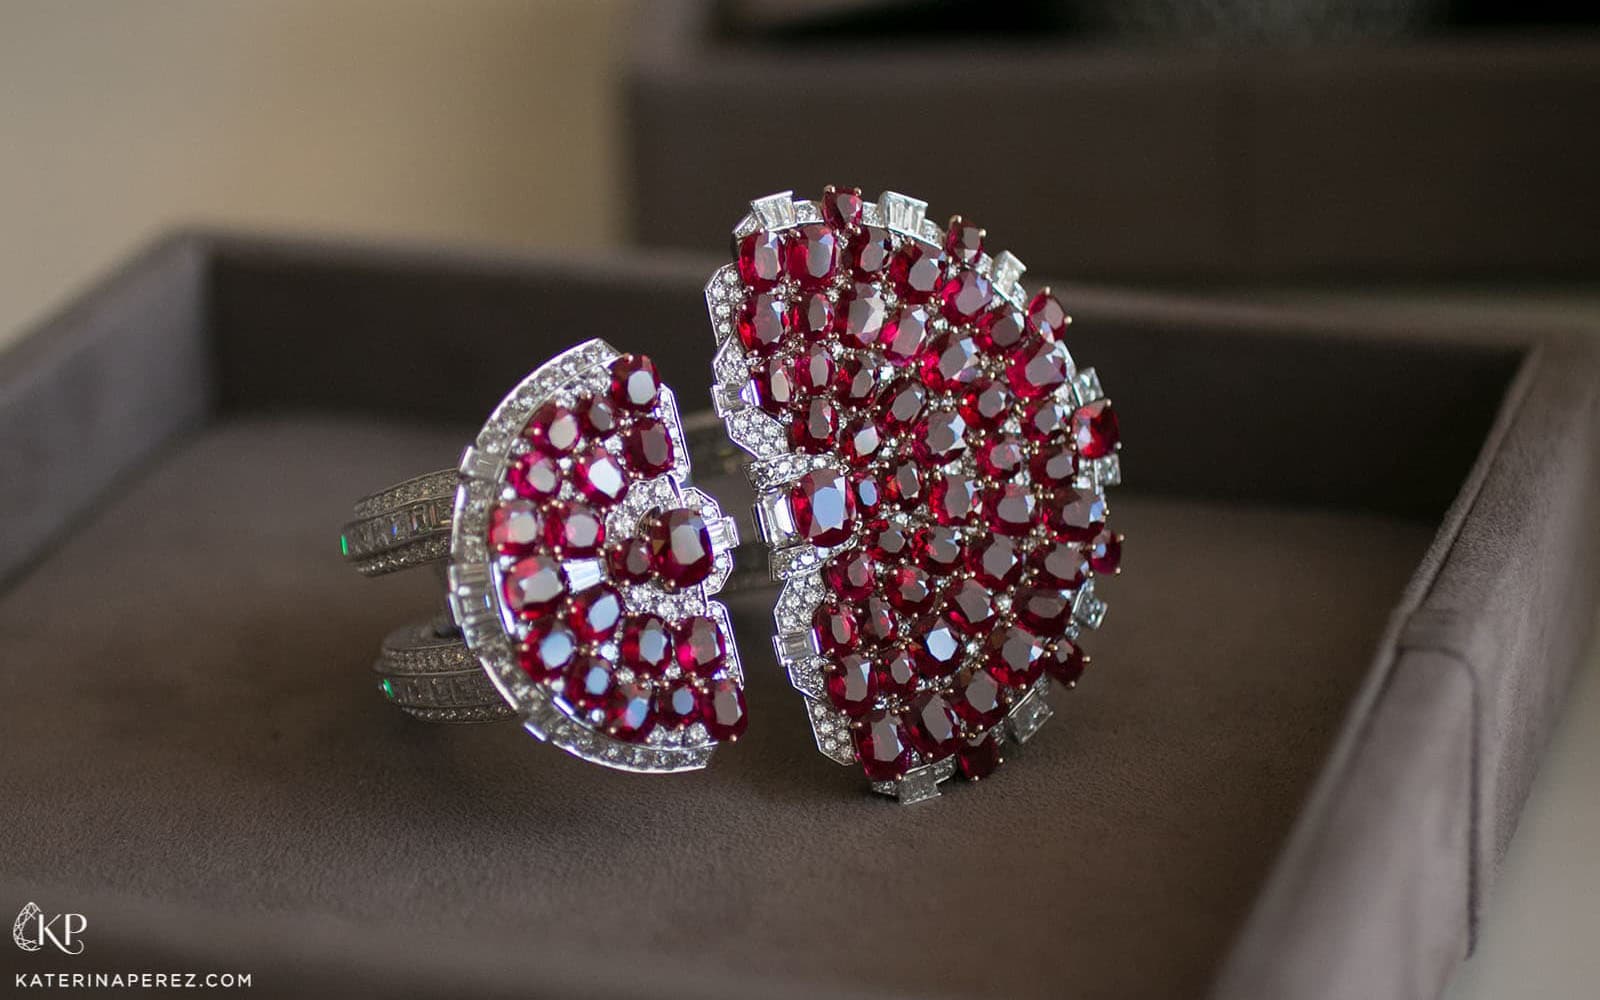 Van Cleef & Arpels ruby and diamond bracelet